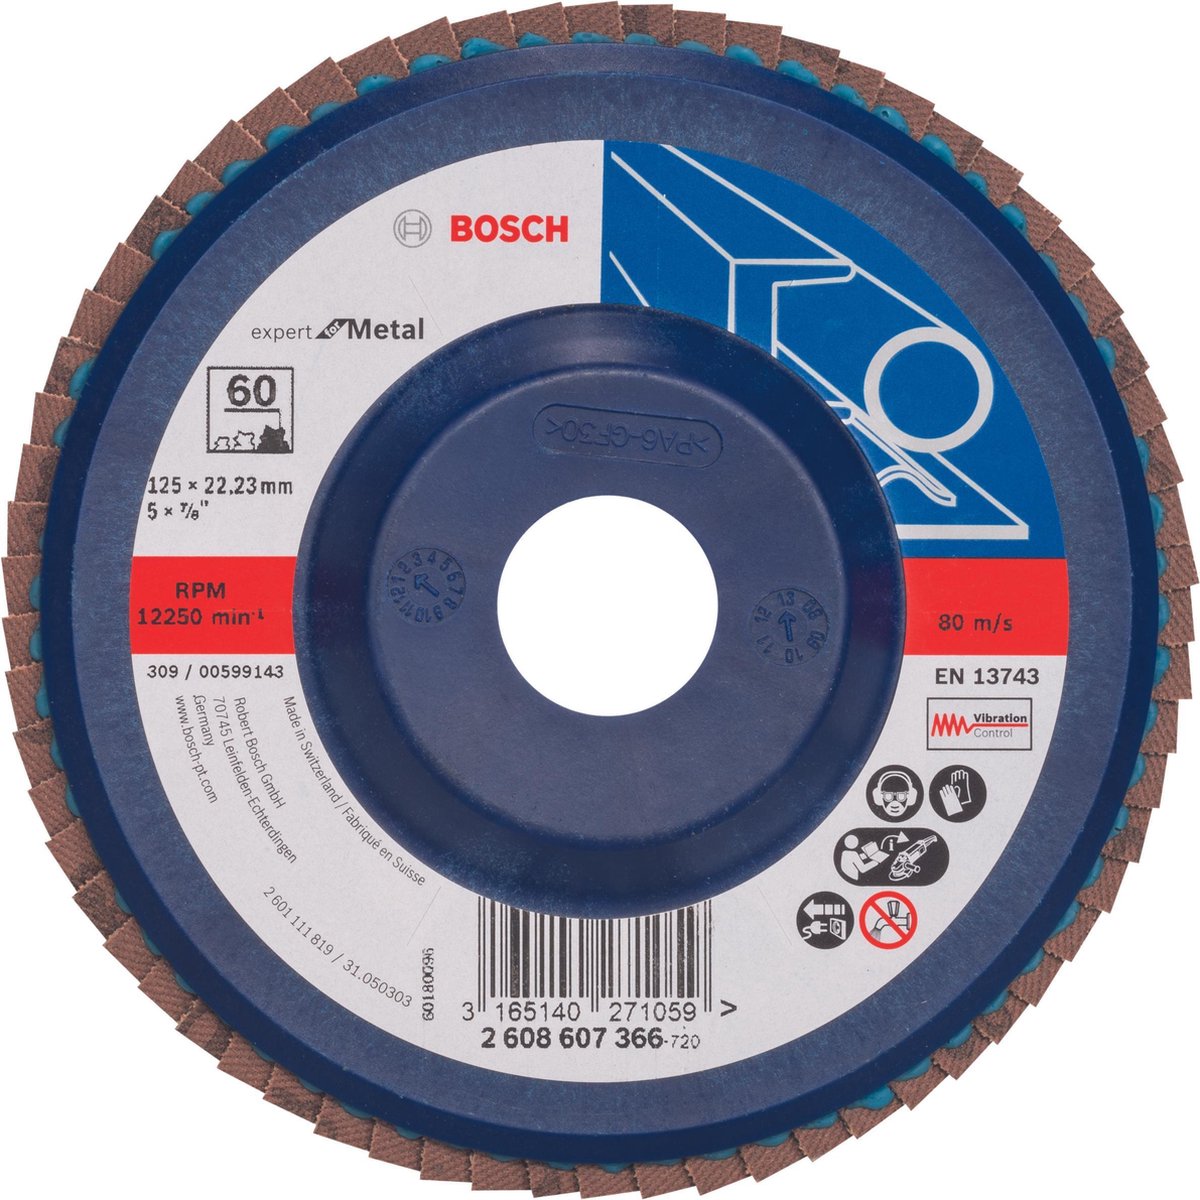 Bosch - Lamellenschuurschijf 125 mm, 22,23 mm, 60 - Bosch